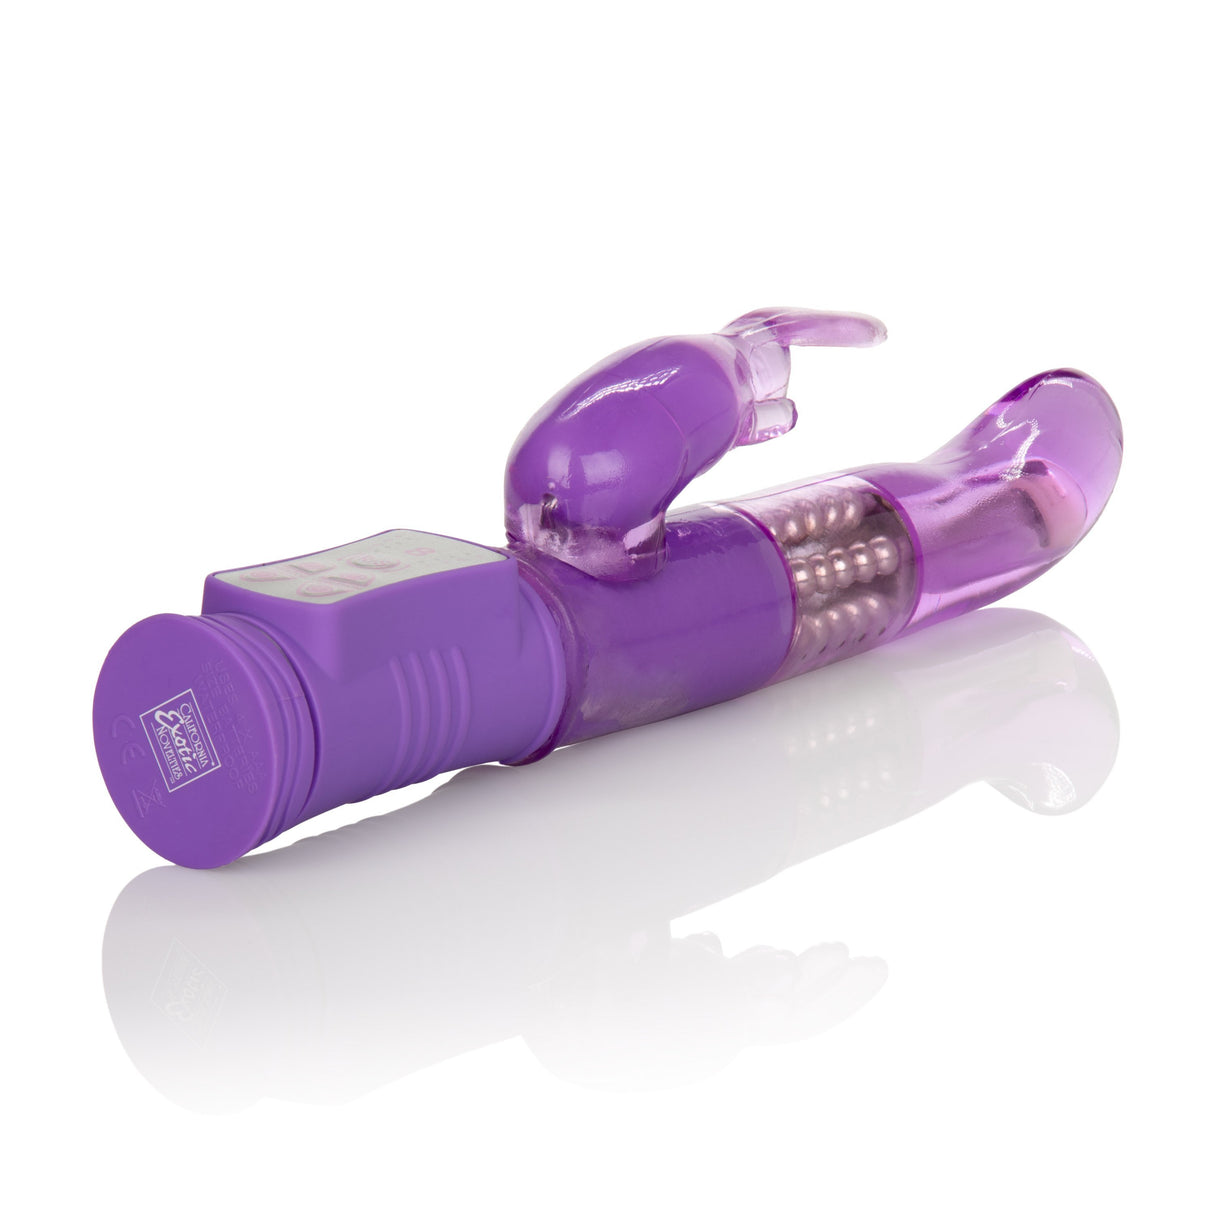 California Exotics - Shane's World Jack Rabbit G Vibrator (Purple) CE1525 CherryAffairs